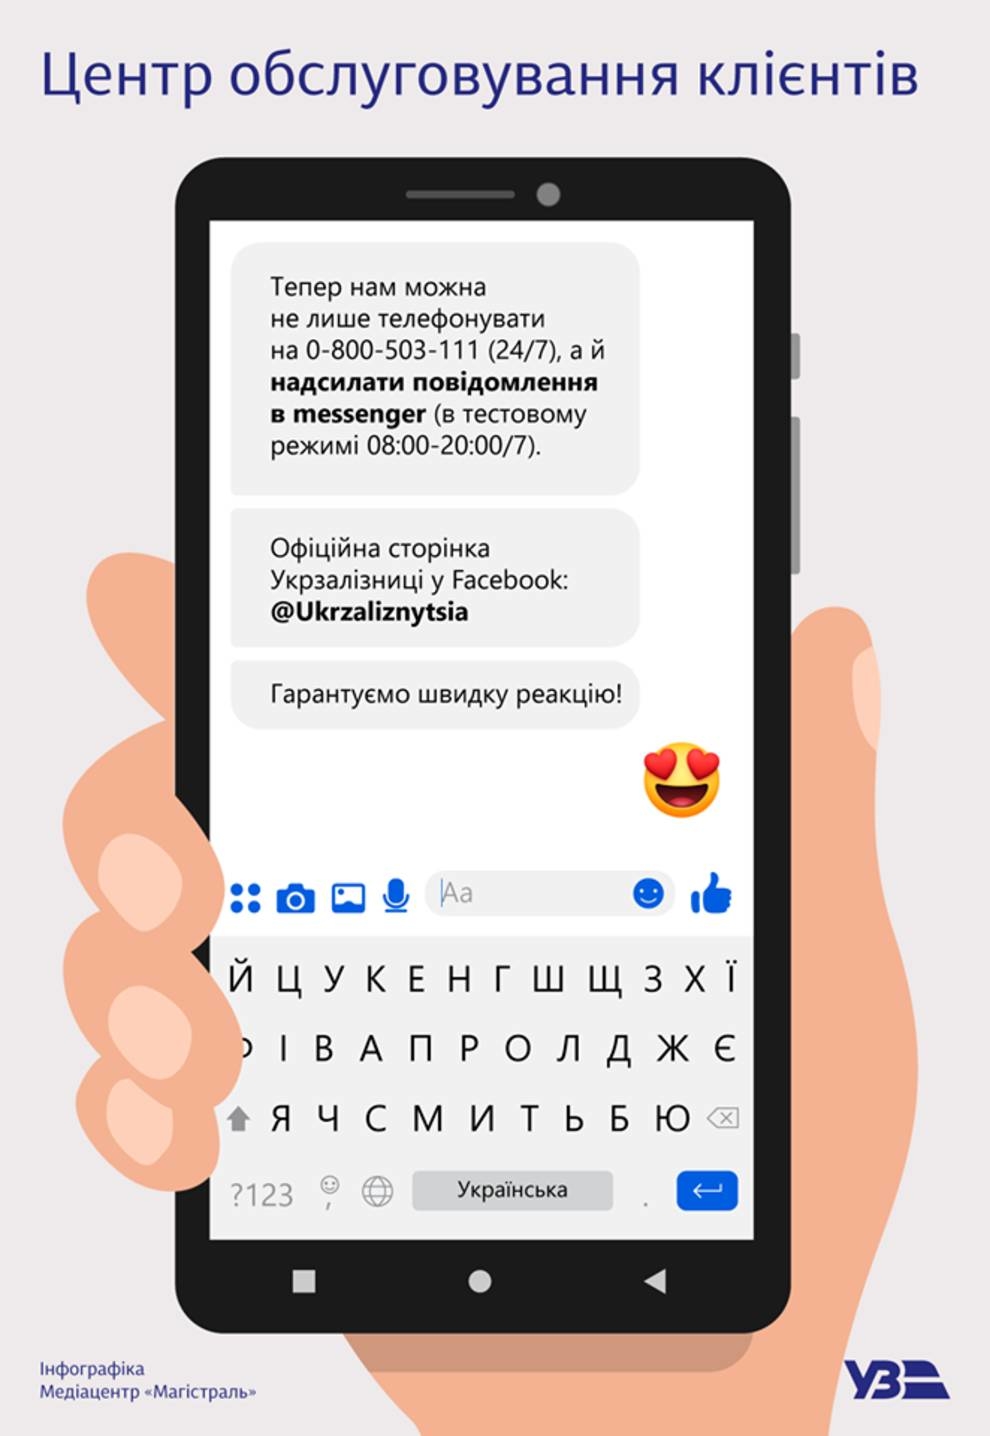 Укрзализныця запустила через Facebook-месенджер новый канал коммуникации